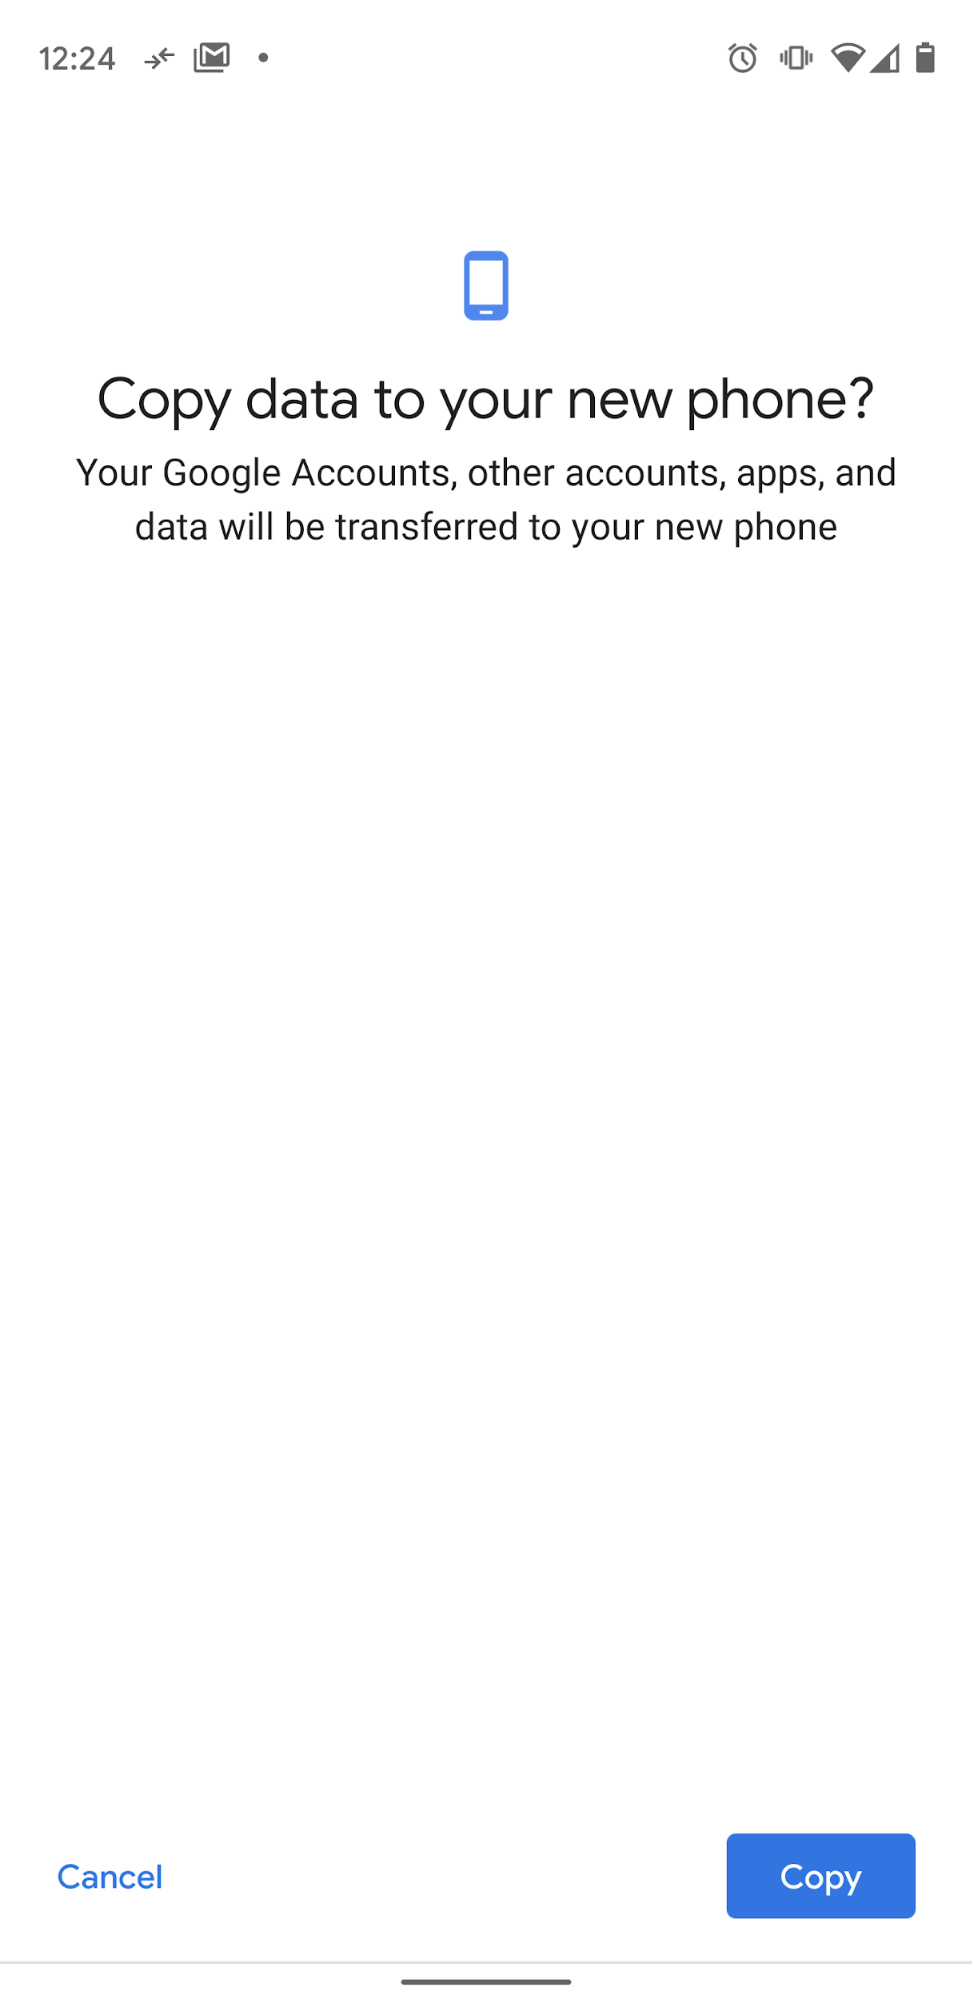 Sao chép dữ liệu vào điện thoại mới của bạn.